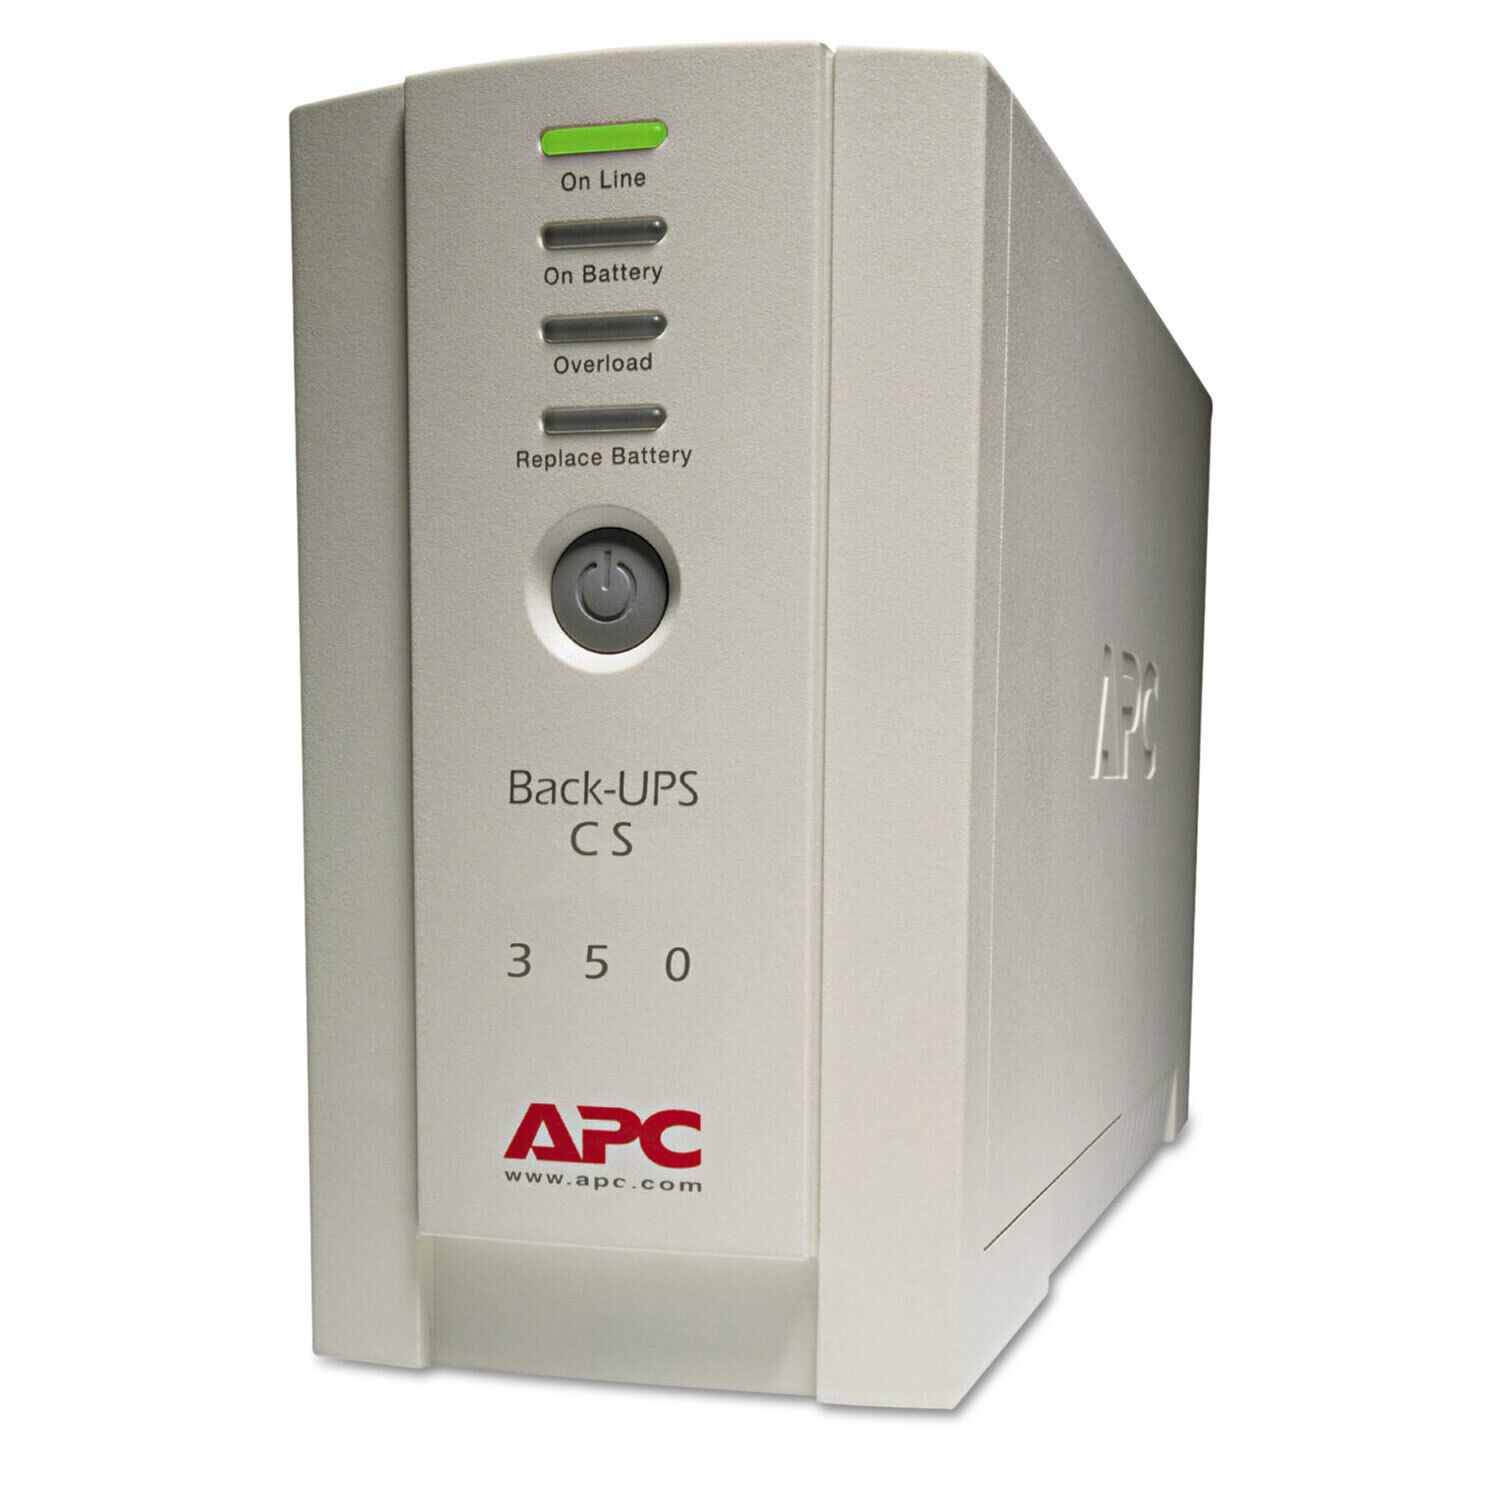 Apc Back-UPS CS Battery Backup System Six-Outlet 350 Volt-Amps BK350